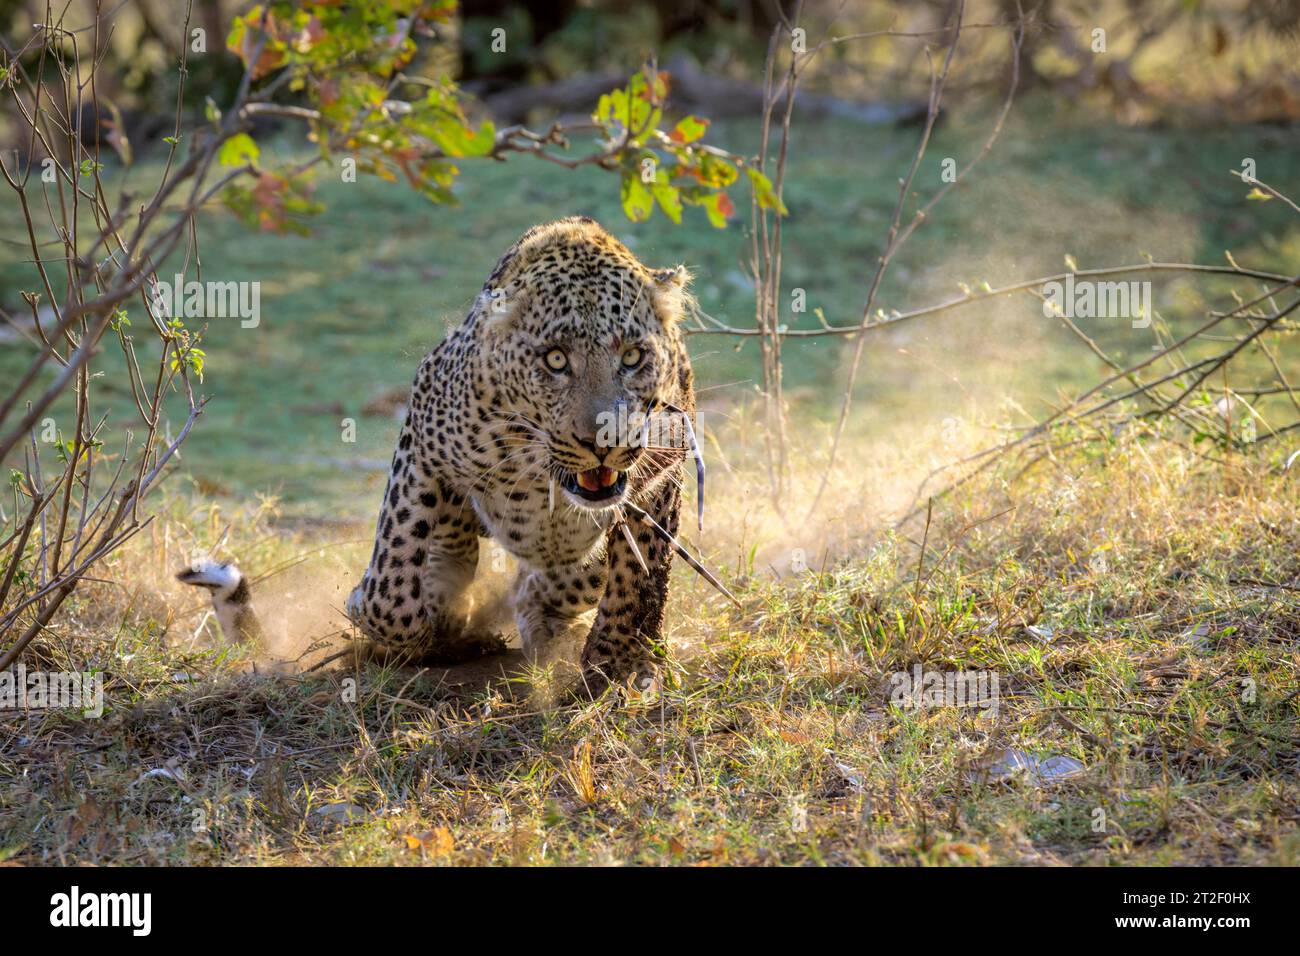 Léopard (Panthera pardus) attaquant le photographe, avec des pointes de porc-épic (Quills) dans la bouche, parc national Kruger, Afrique du Sud Banque D'Images